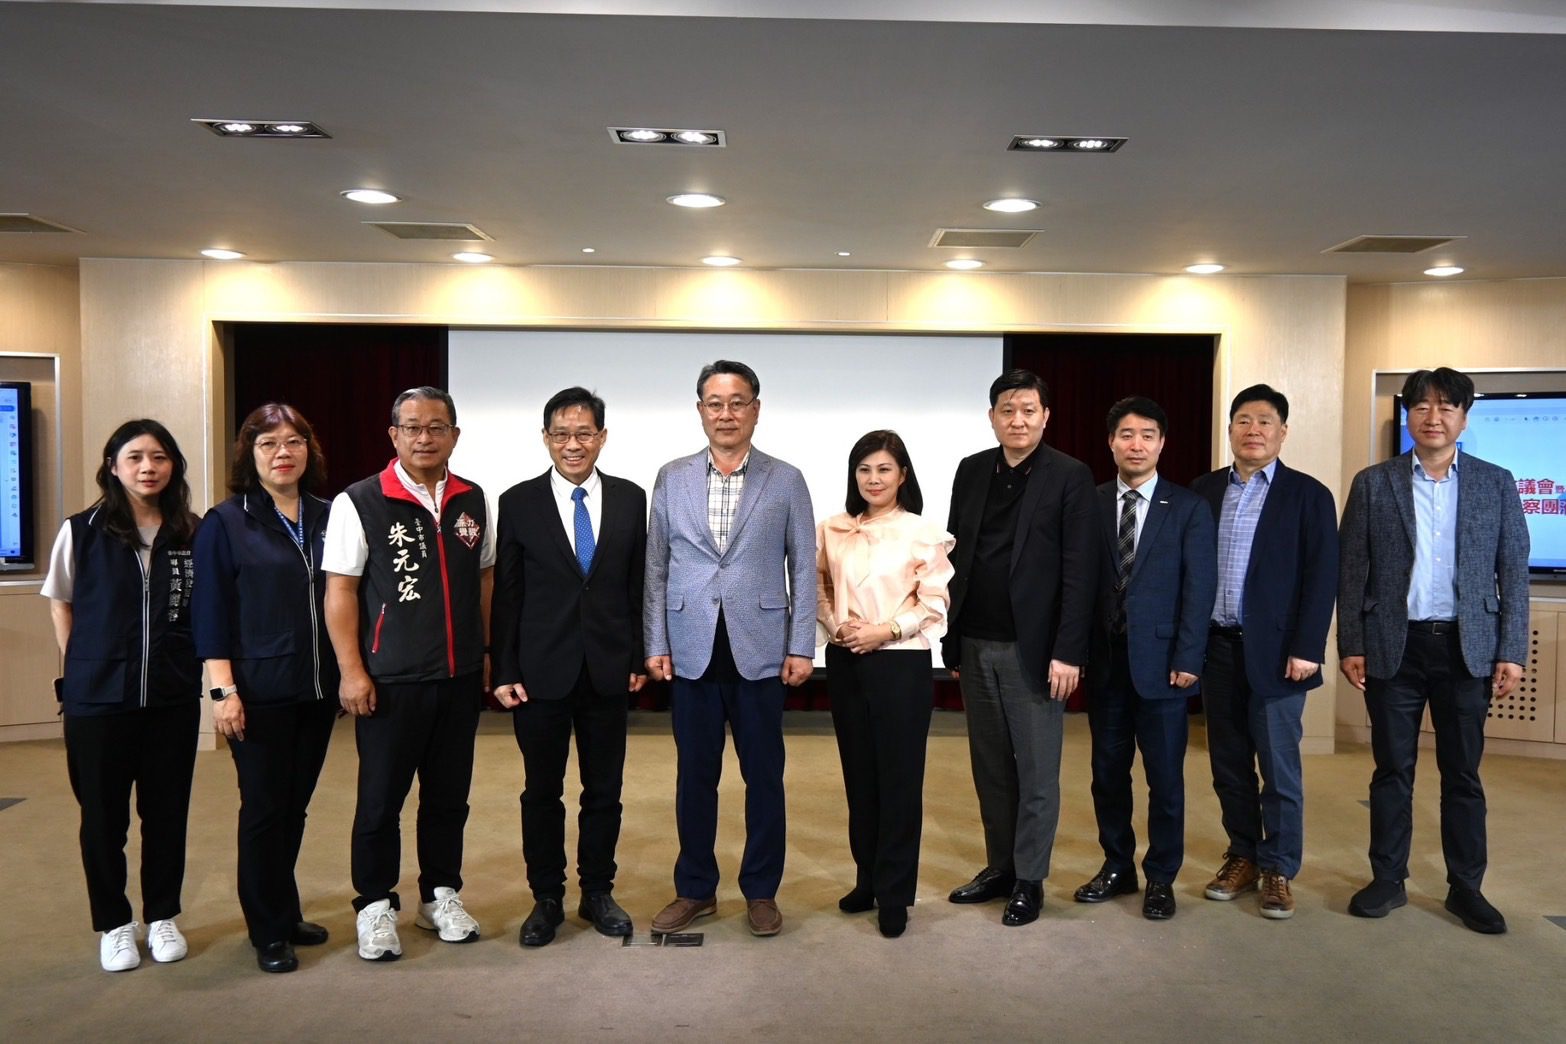 韓國經貿考察團拜會中市府 奠定合作基礎創造產業商機